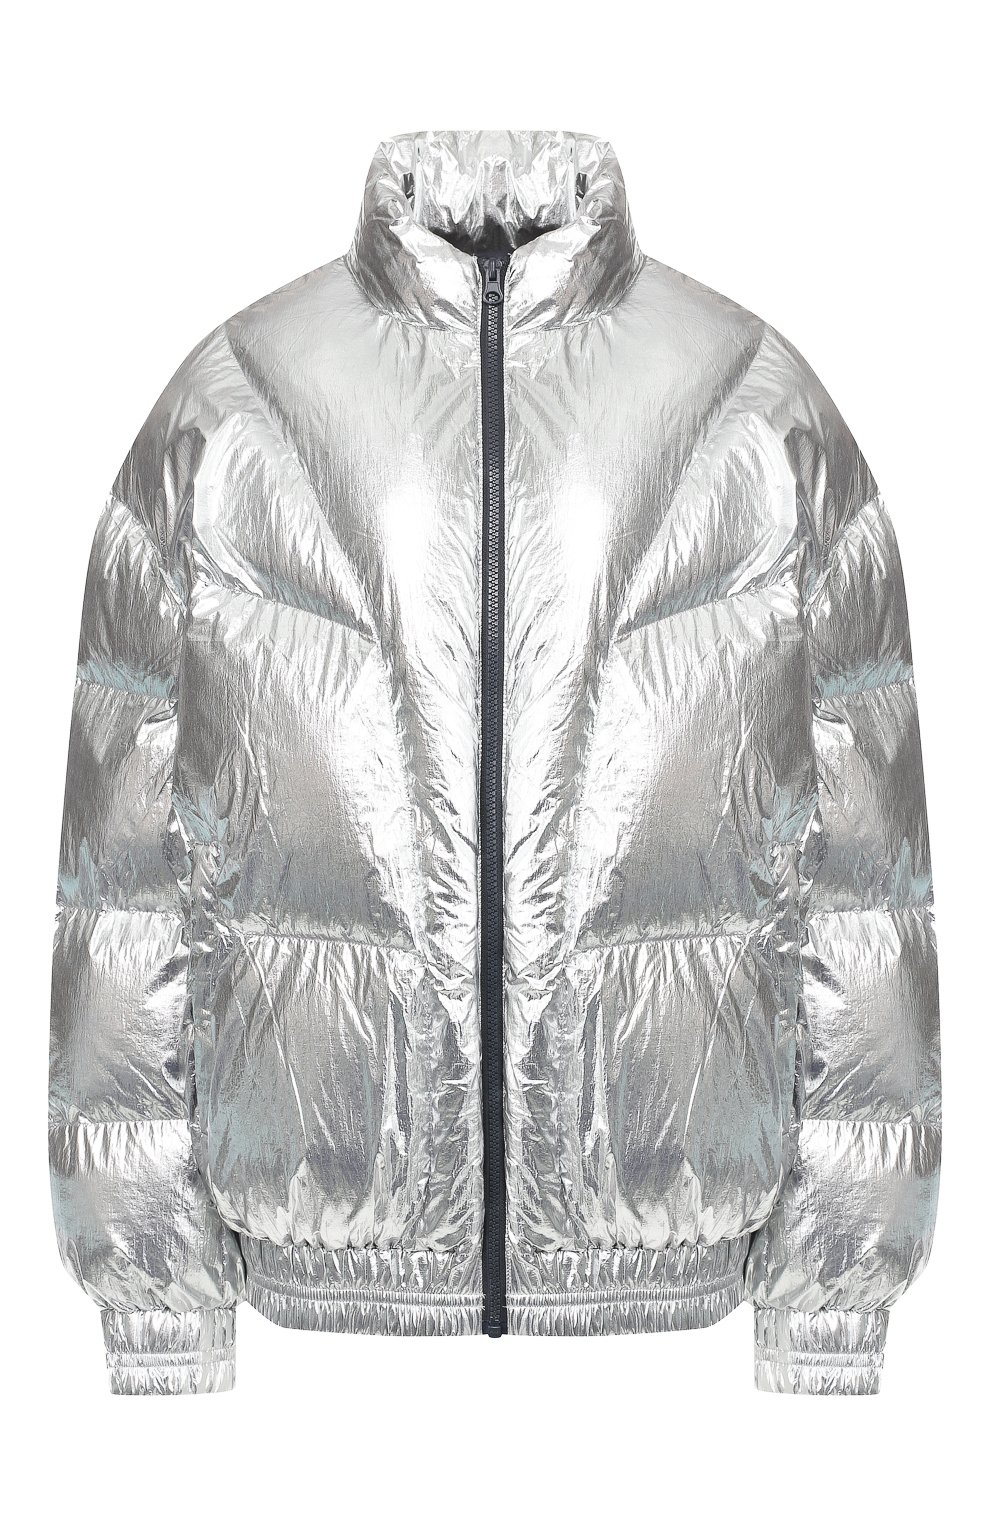 Женская утепленная куртка ISABEL MARANT ETOILE серебряного цвета, арт. MA0592-19A074E/KRISTEN | Фото 1 (Кросс-КТ: Куртка, Утепленный, Пуховик; Рукава от горловины: Длинные; Рукава: Длинные; Женское Кросс-КТ: Пуховик-куртка; Материал внешний: Синтетический материал; Материал подклада: Синтетический материал; Статус проверки: Проверено, Проверена категория; Длина (верхняя одежда): Короткие)